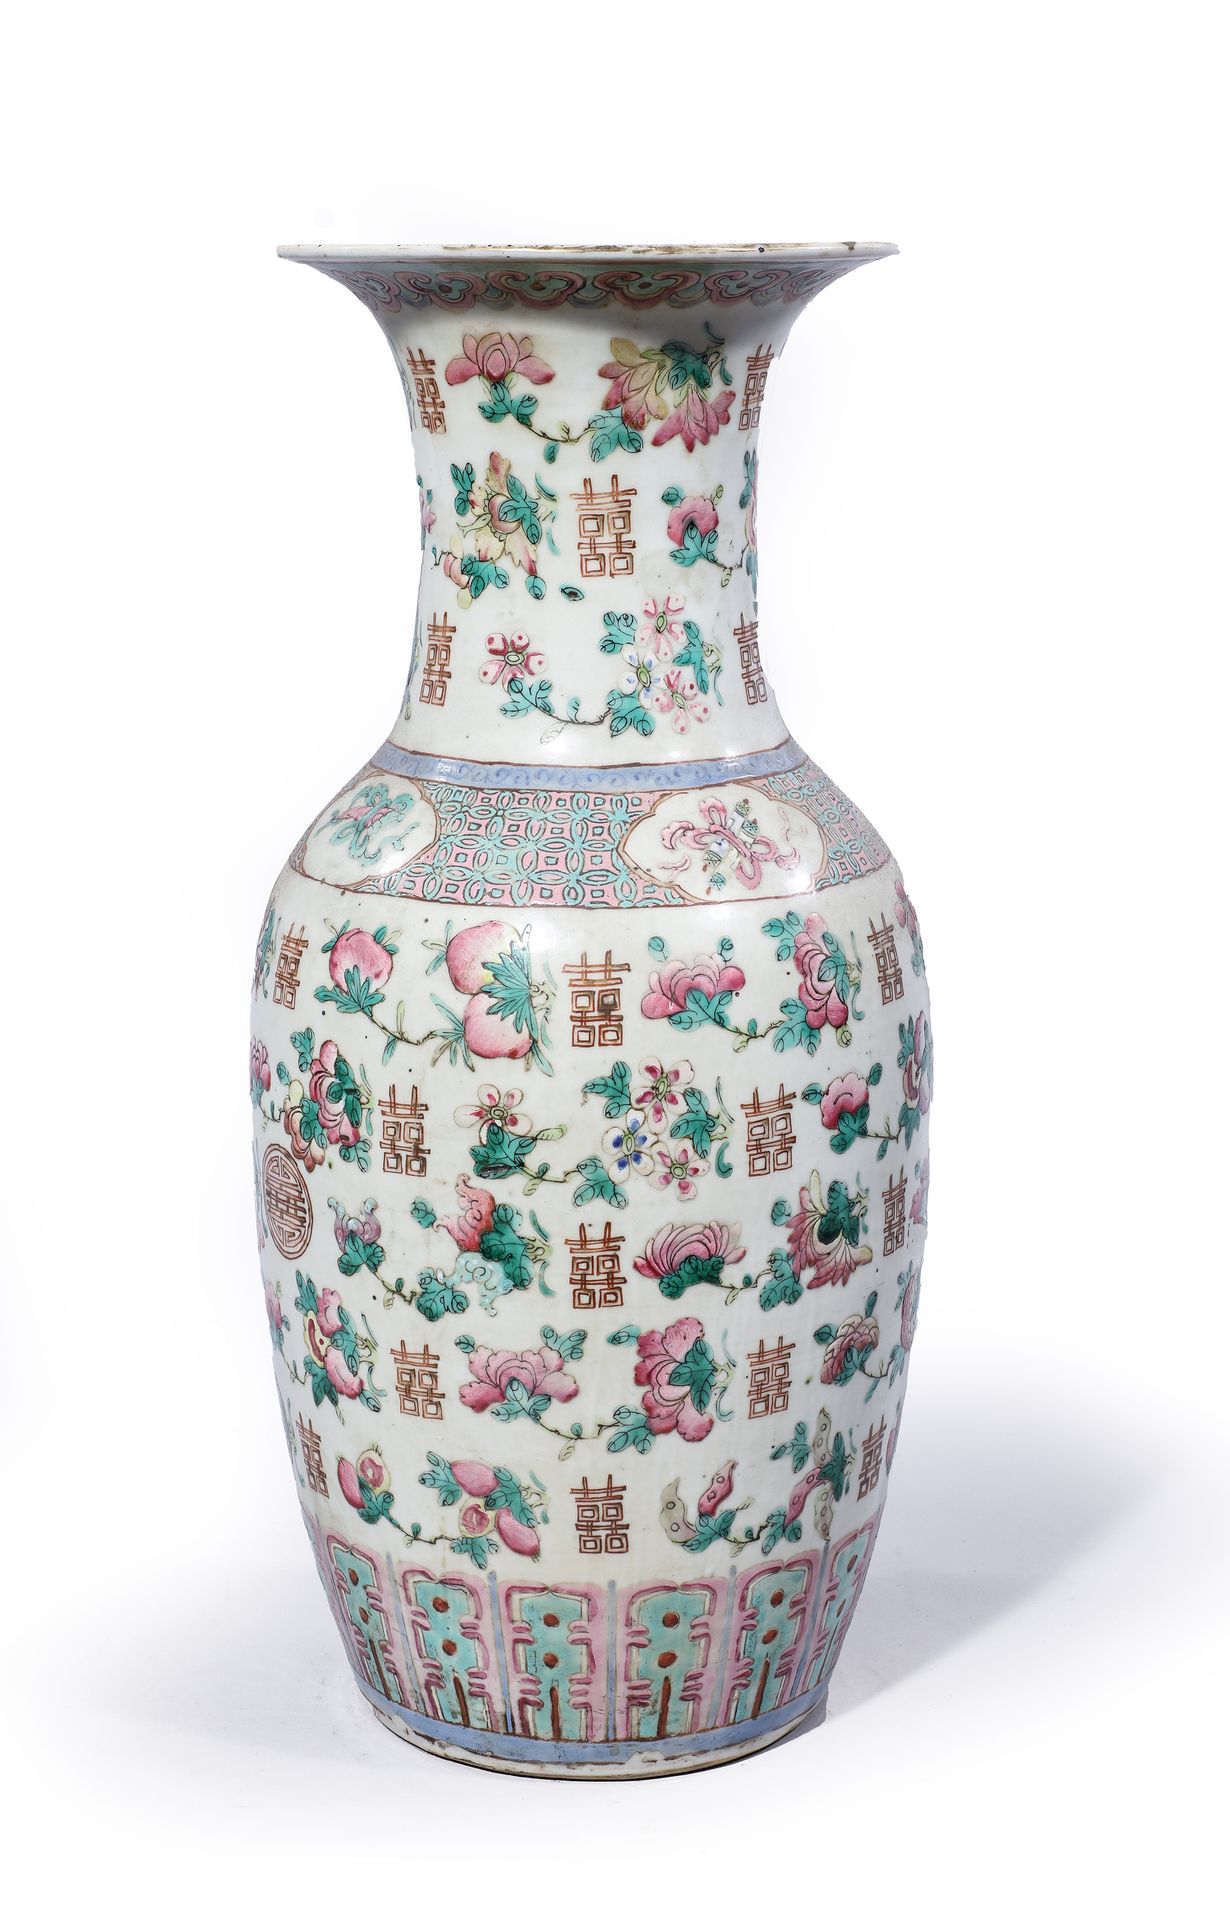 Null 
Vaso decorato con ideogrammi e fiori.

Cina Canton 19° secolo

H. 46 cm

(&hellip;